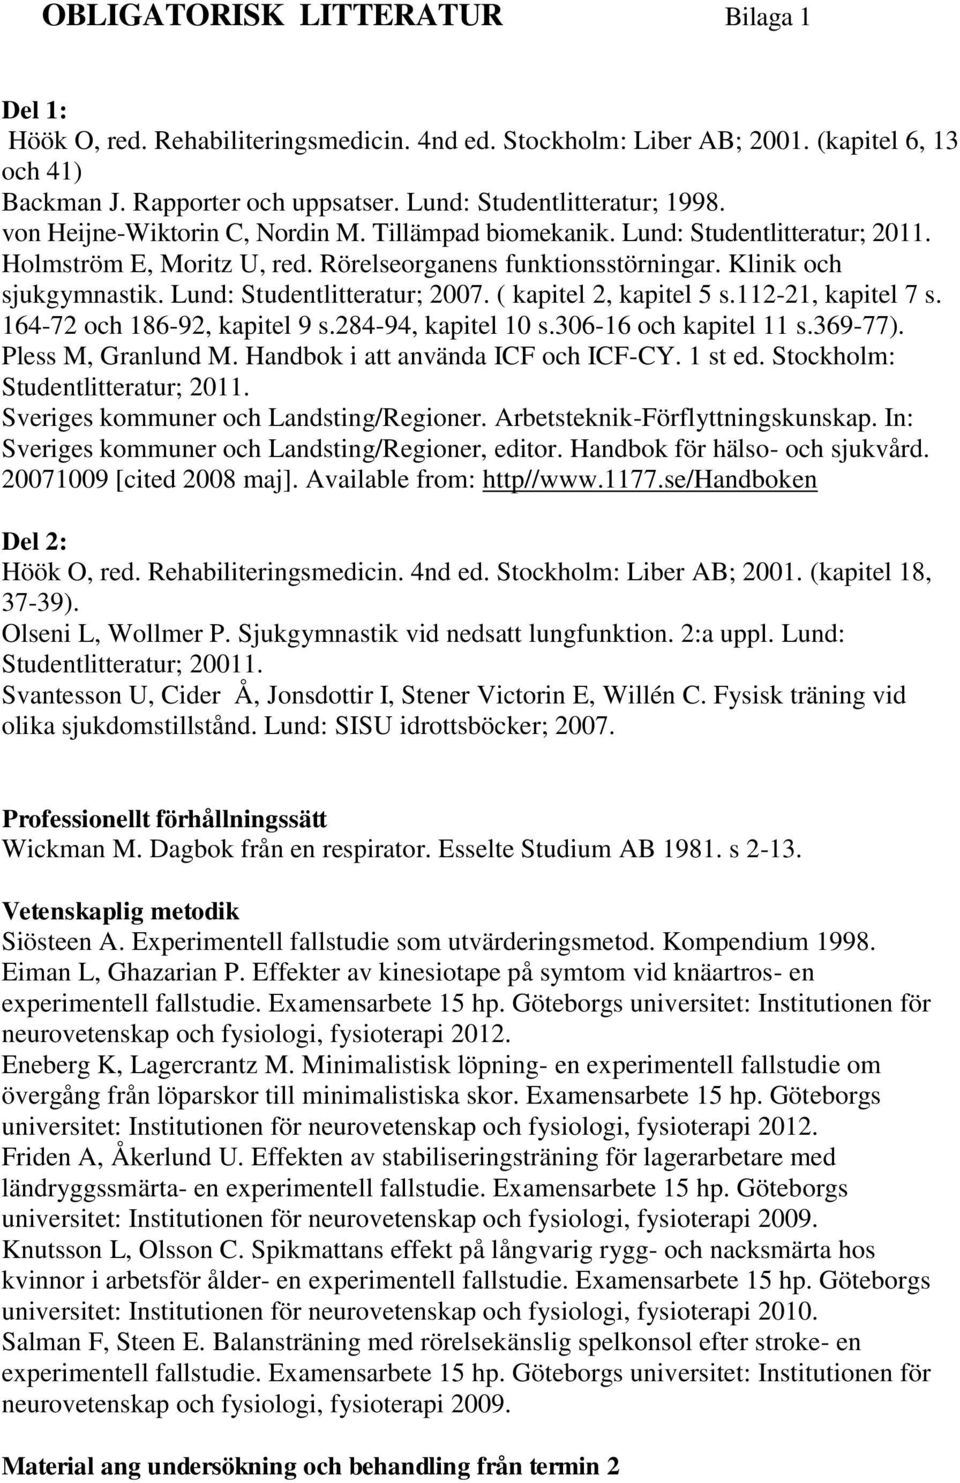 Klinik och sjukgymnastik. Lund: Studentlitteratur; 2007. ( kapitel 2, kapitel 5 s.112-21, kapitel 7 s. 164-72 och 186-92, kapitel 9 s.284-94, kapitel 10 s.306-16 och kapitel 11 s.369-77).